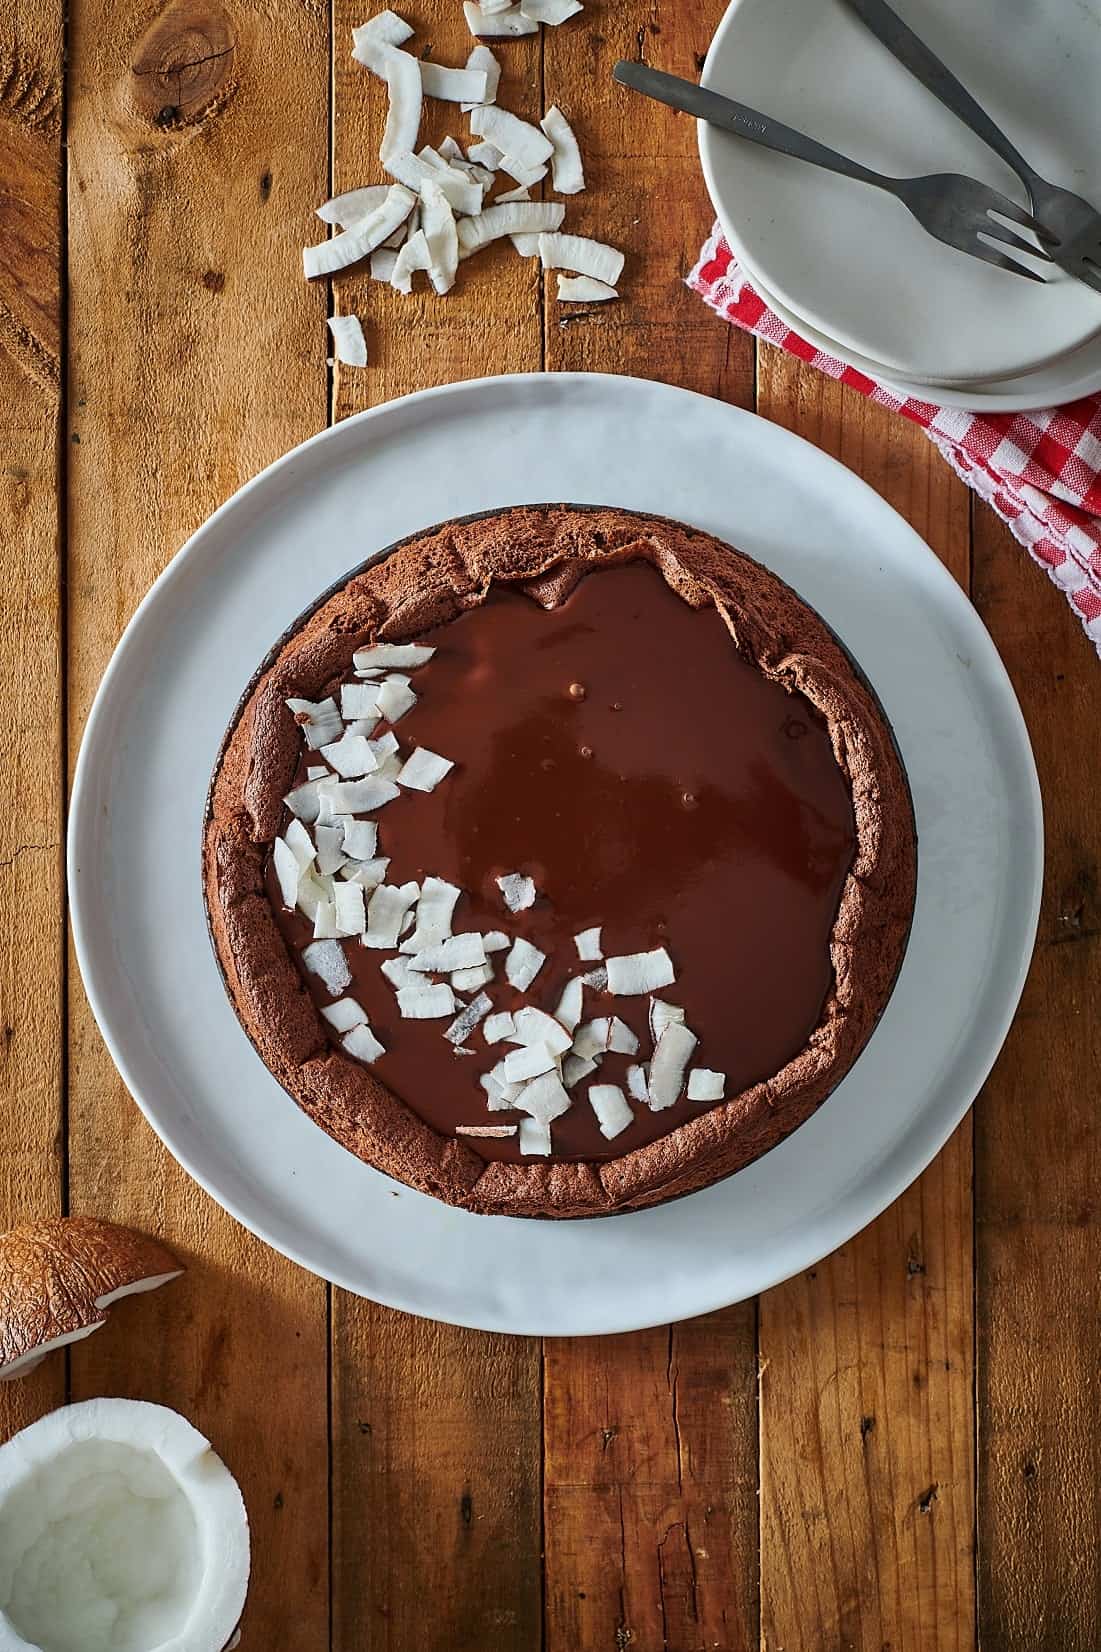 מאסטר שף מתכון עוגת שוקולד וקוקוס נימוחה לפסח צילום נמרוד סנדרס 2